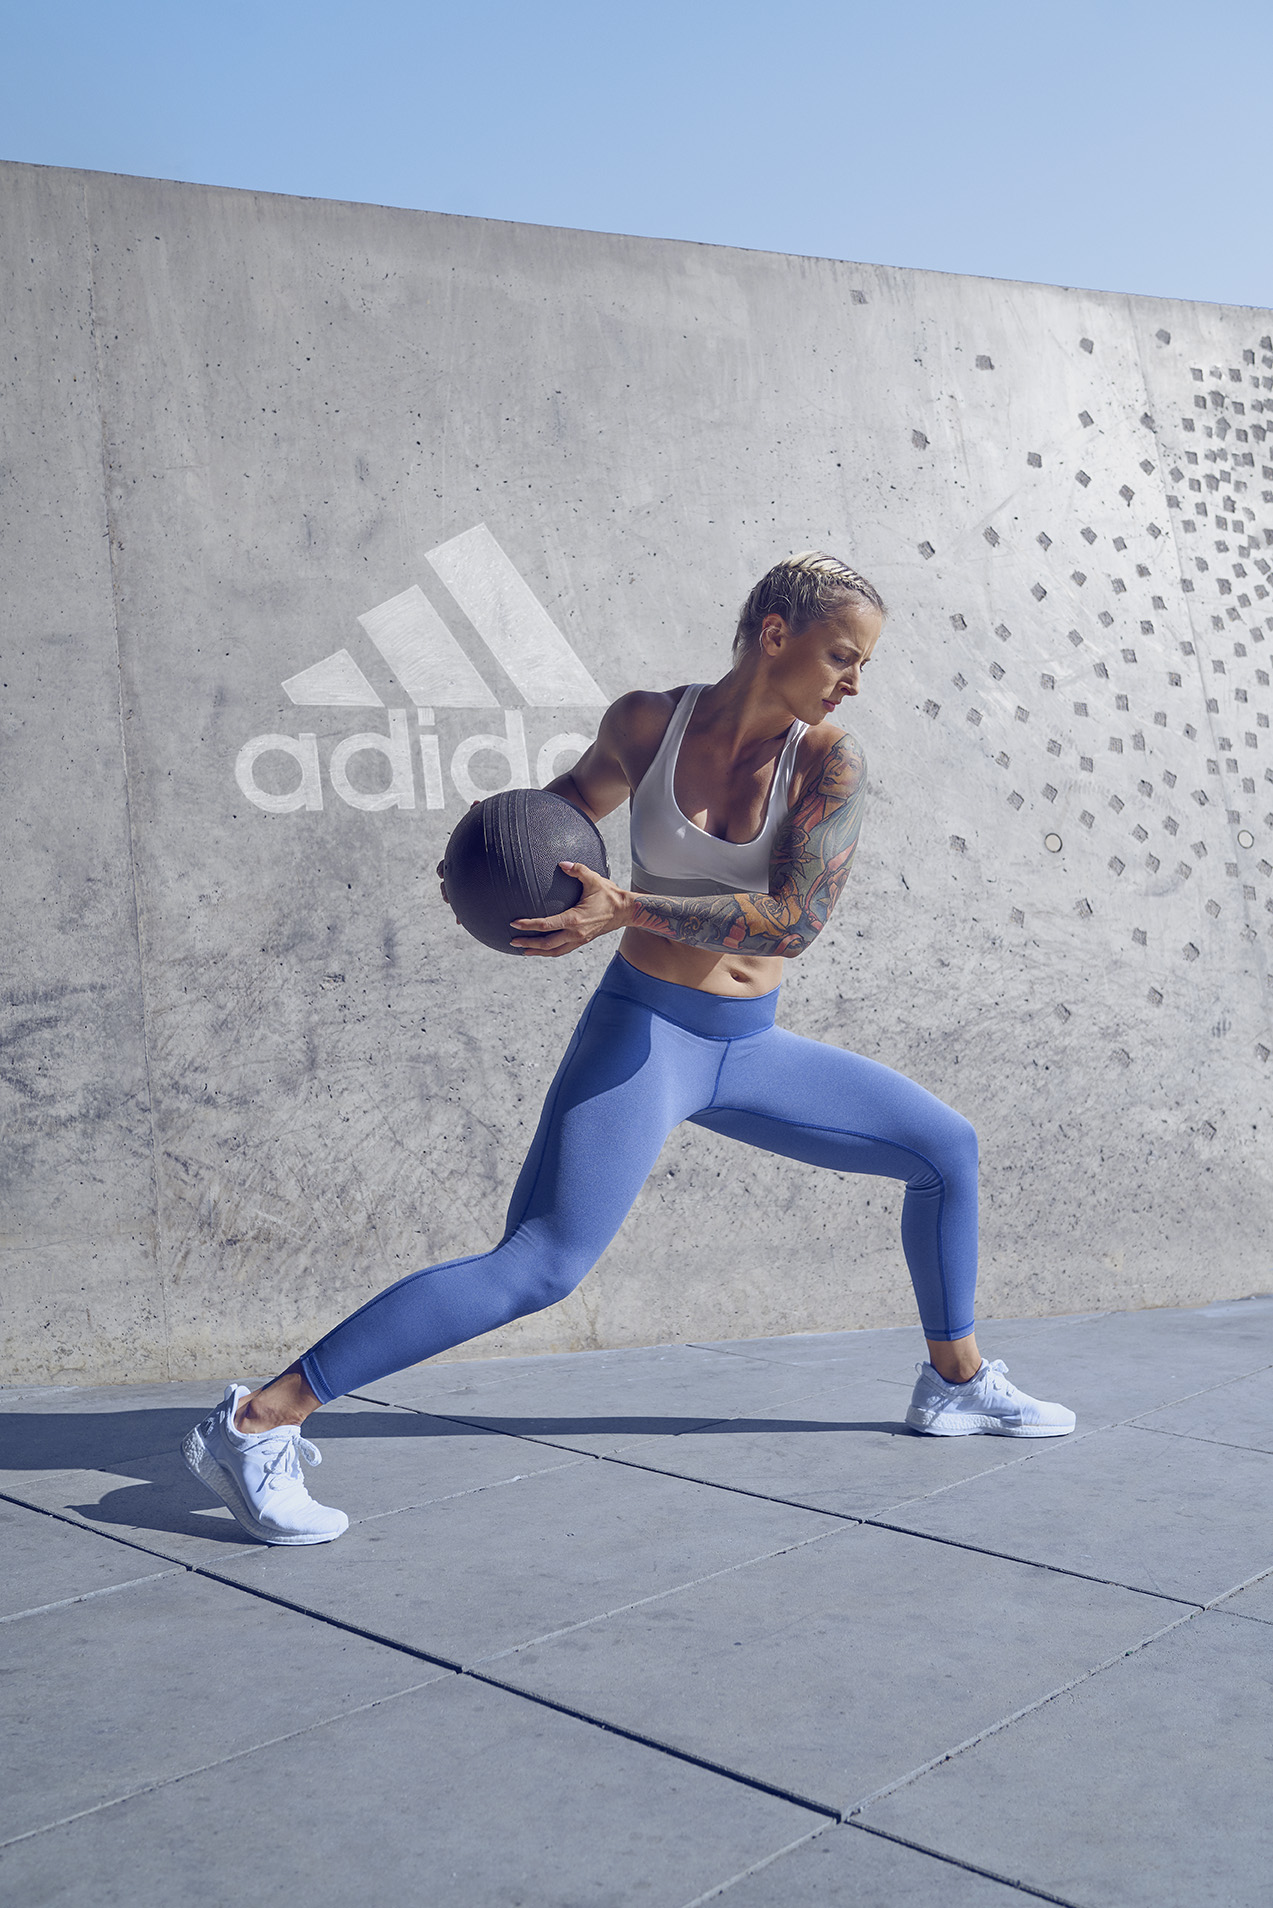 W adidas Runners Warsaw rozpoczynają się treningi adidas Women – Love from  the first sweat - MagazynBieganie.pl